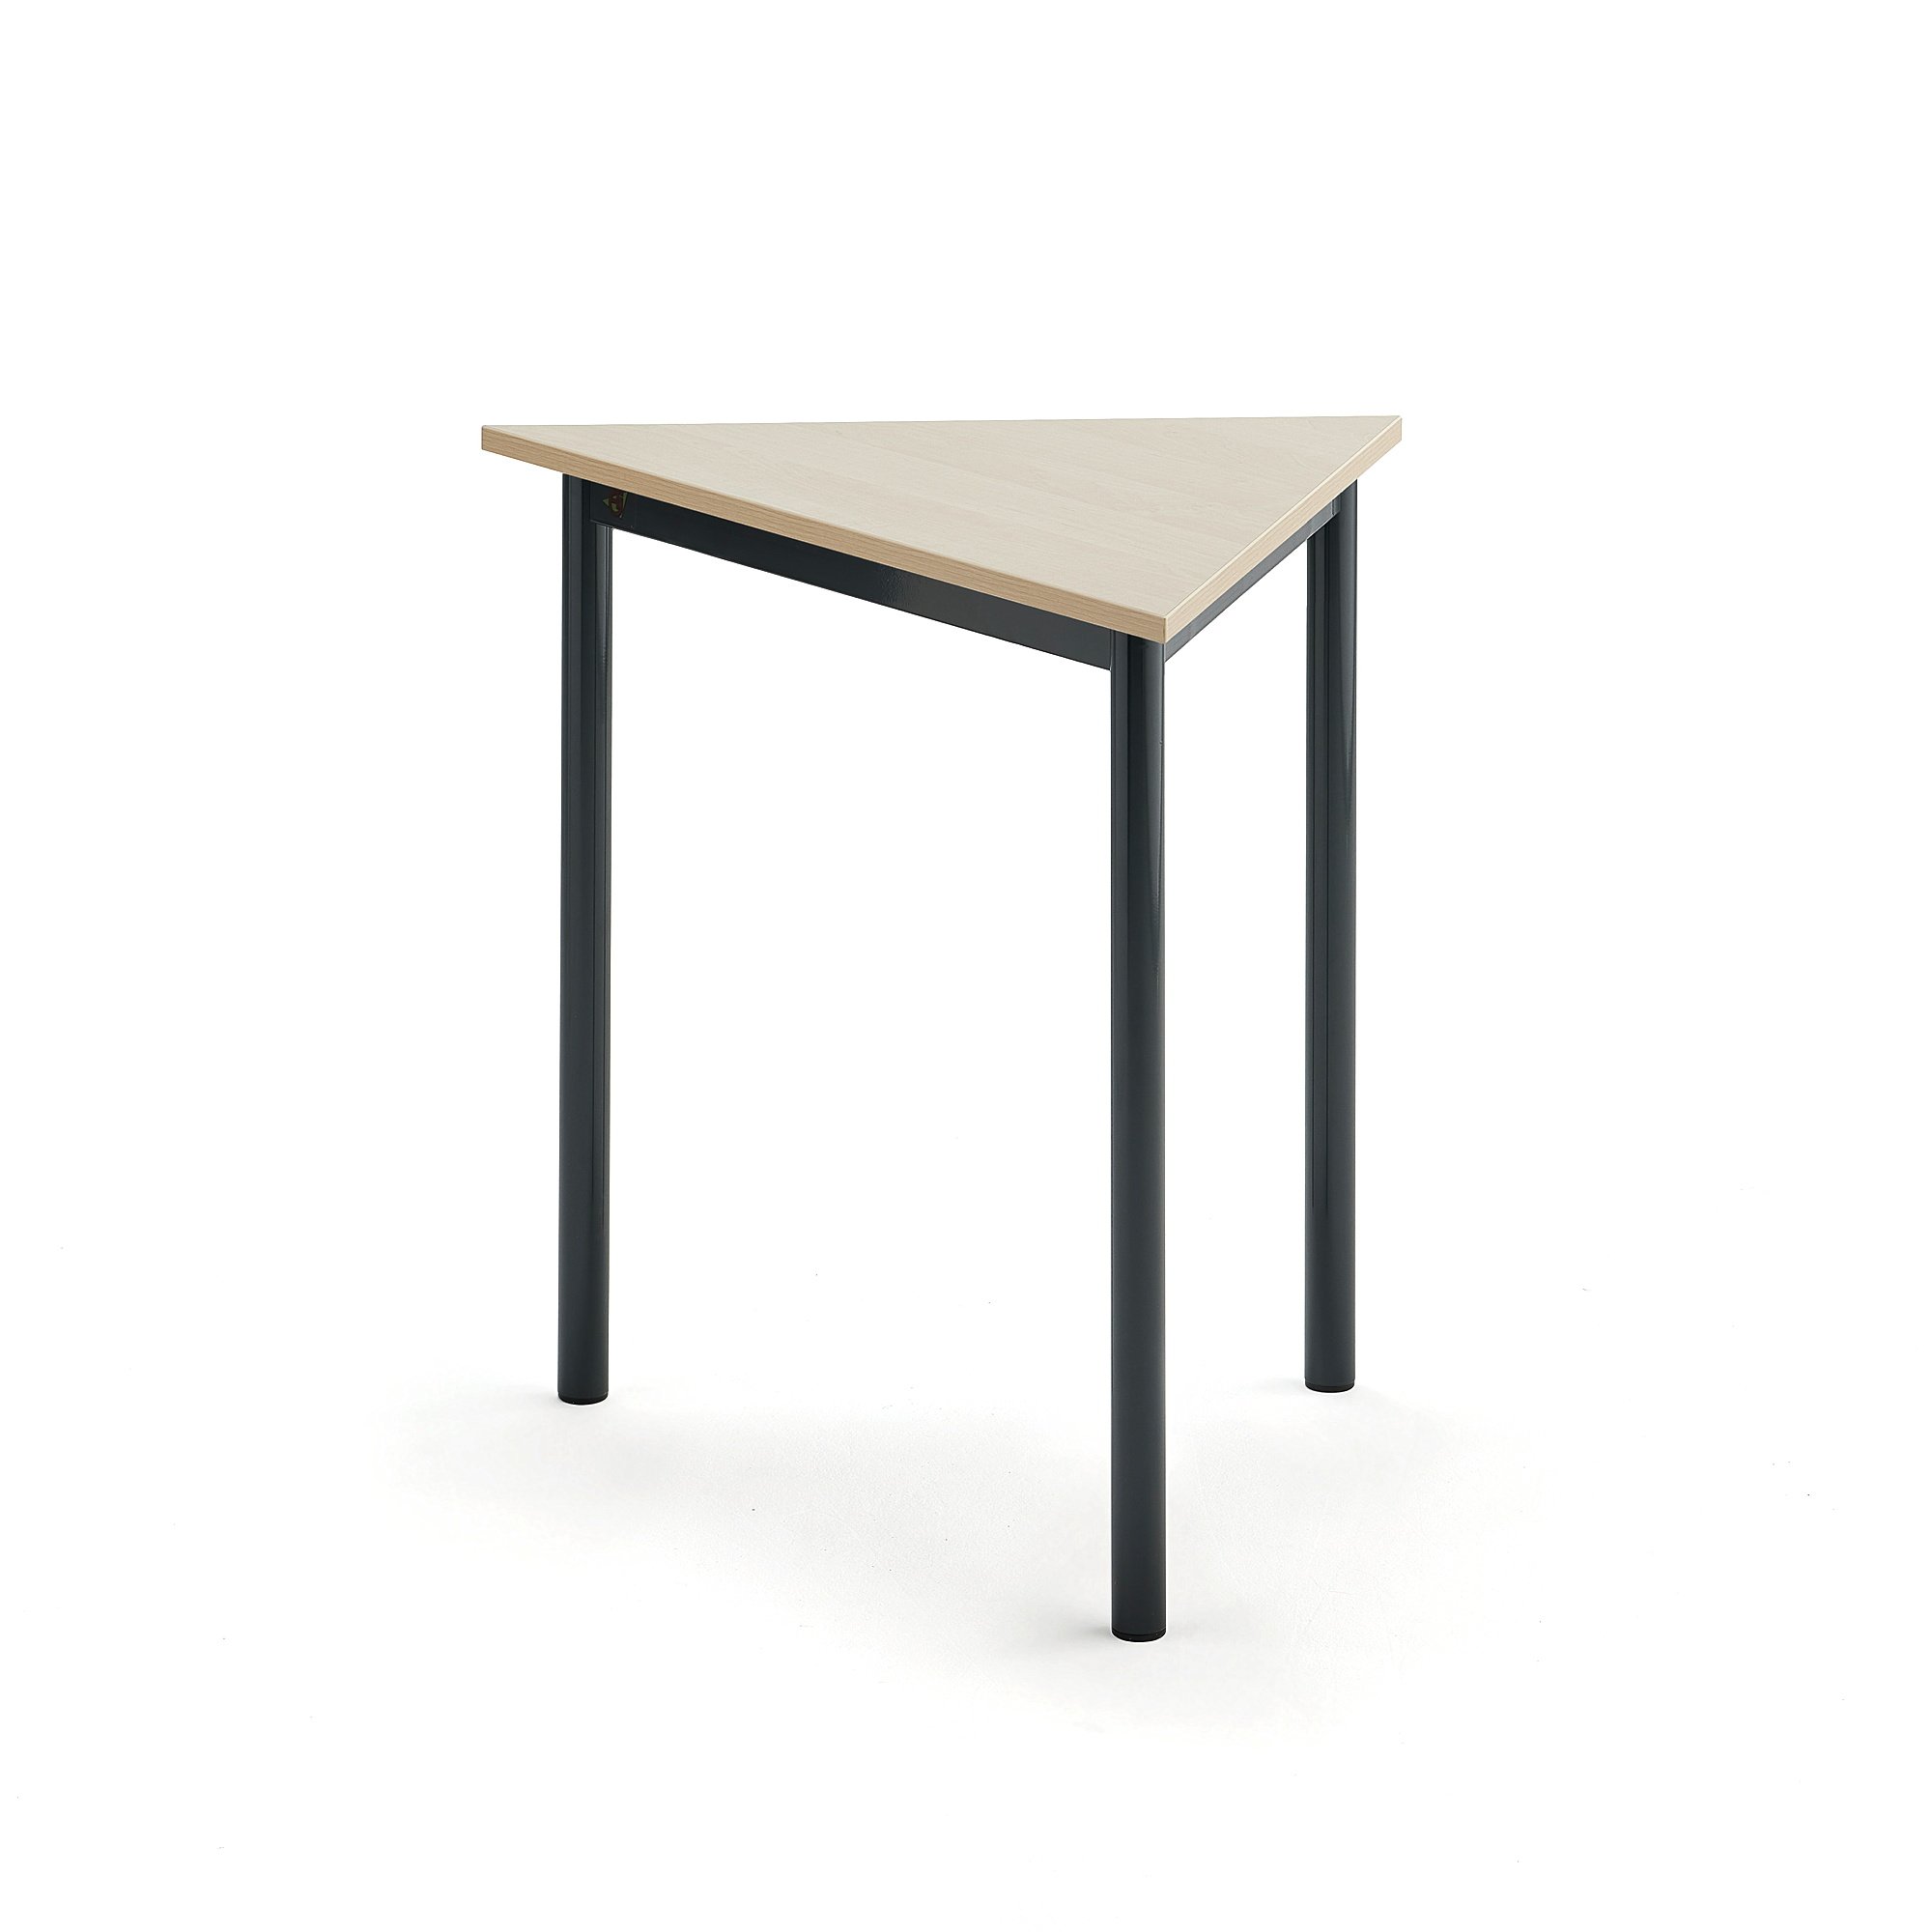 Stůl SONITUS TRIANGEL, 800x700x720 mm, antracitově šedé nohy, HPL deska tlumící hluk, bříza